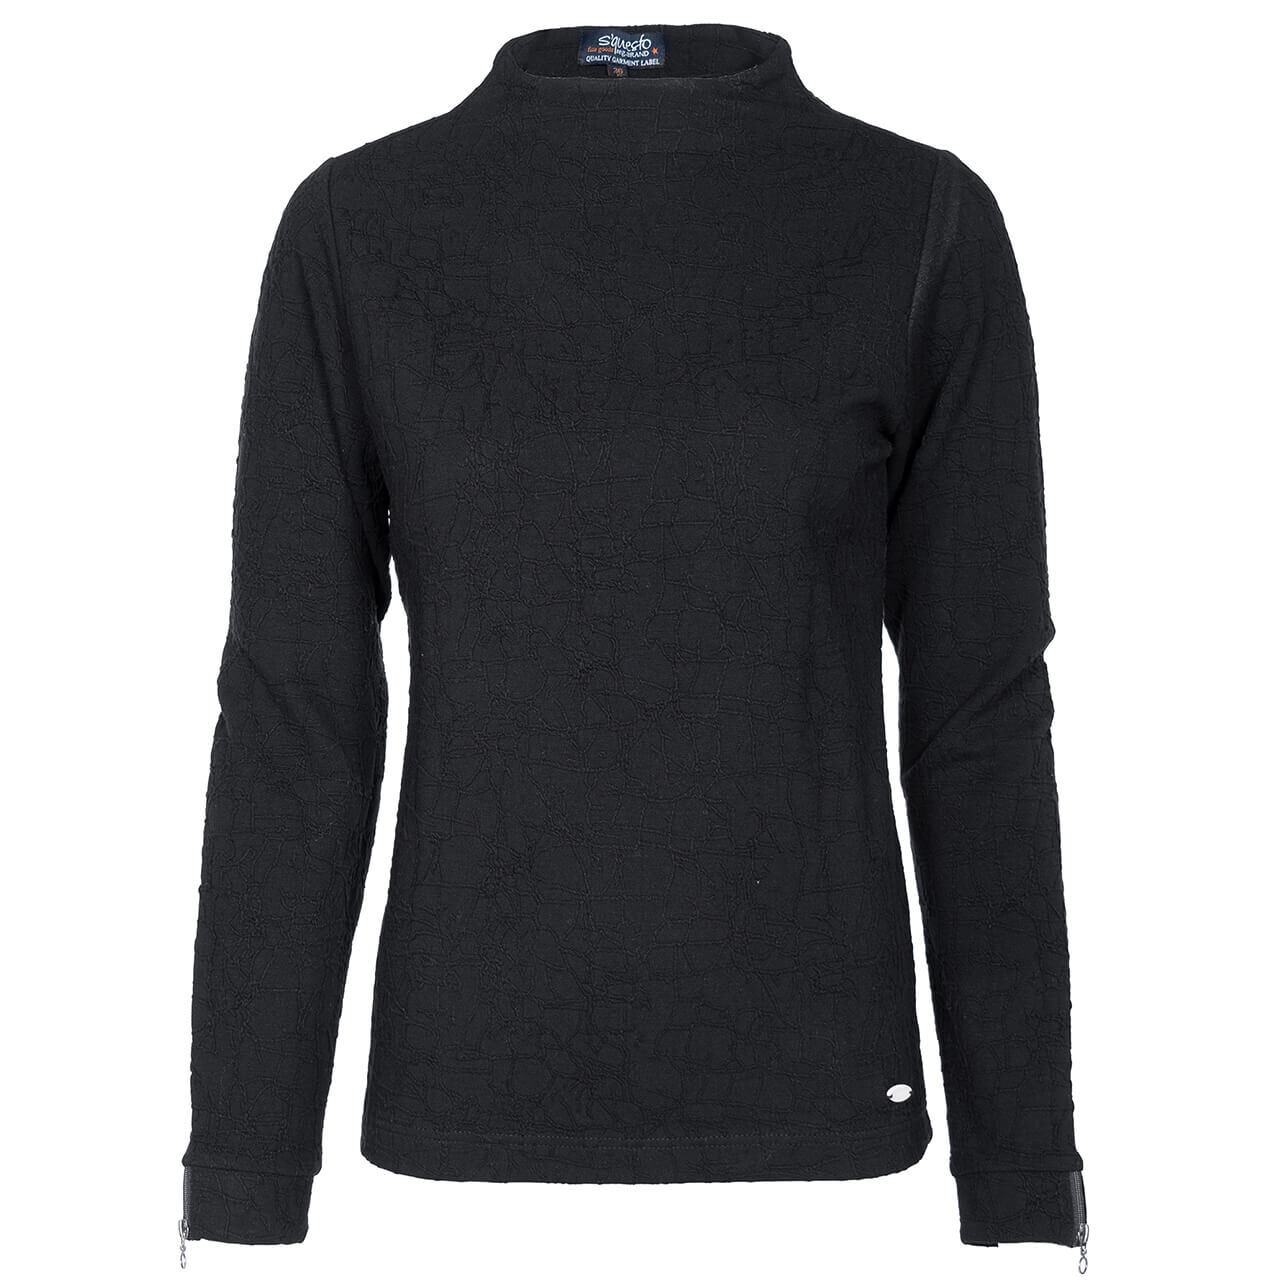 Soquesto Sweatshirt für Damen in Schwarz, FarbNr.: 3000